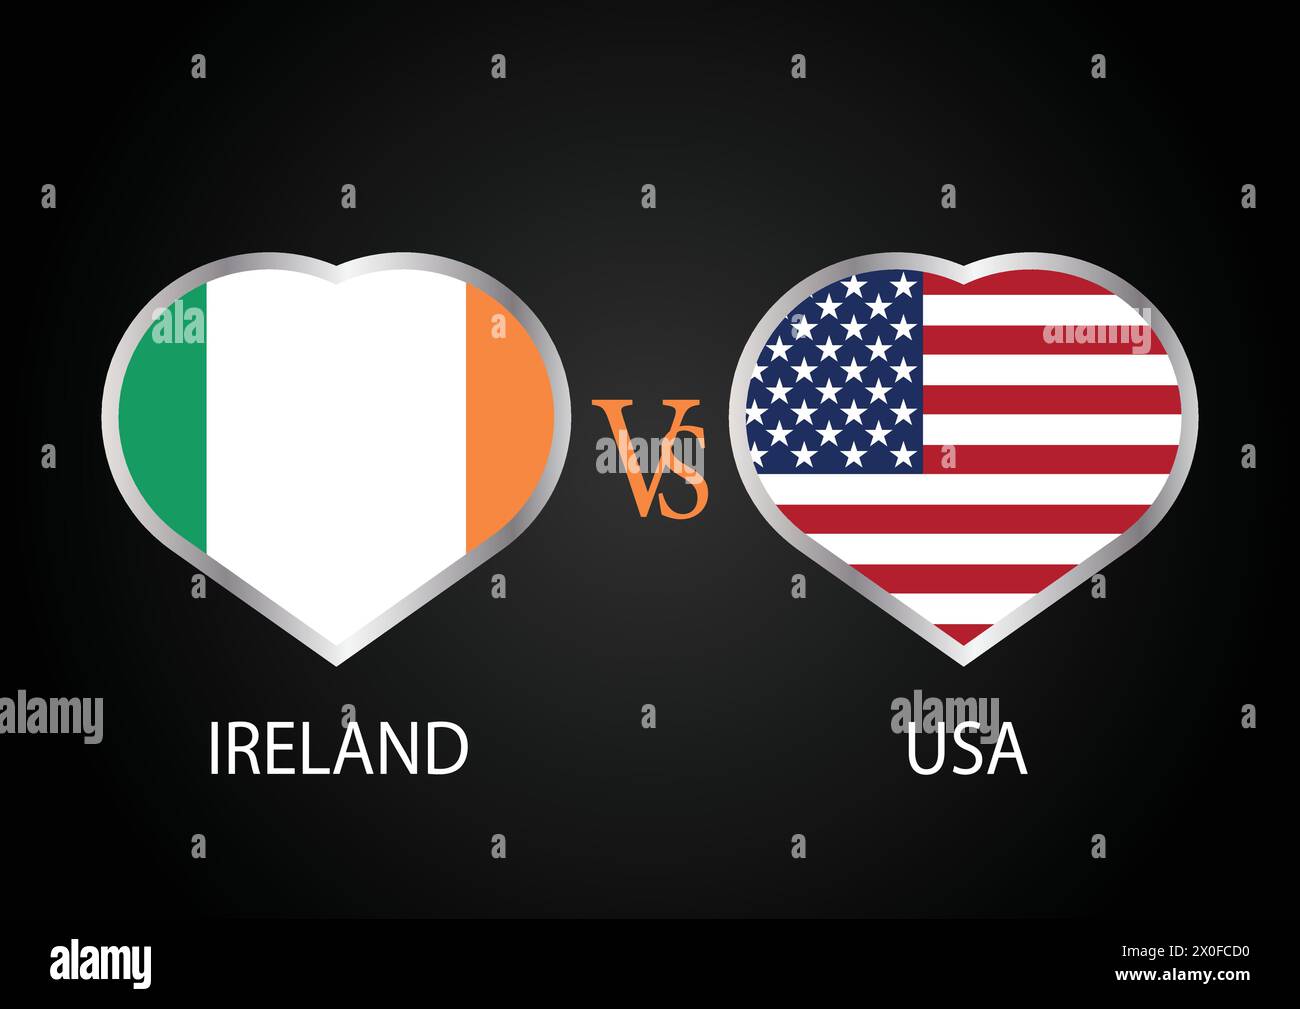 Irland gegen USA, Cricket-Match-Konzept mit kreativer Illustration der Flagge der Teilnehmerländer Schlagmann und Hearts isoliert auf schwarzem Hintergrund Stock Vektor